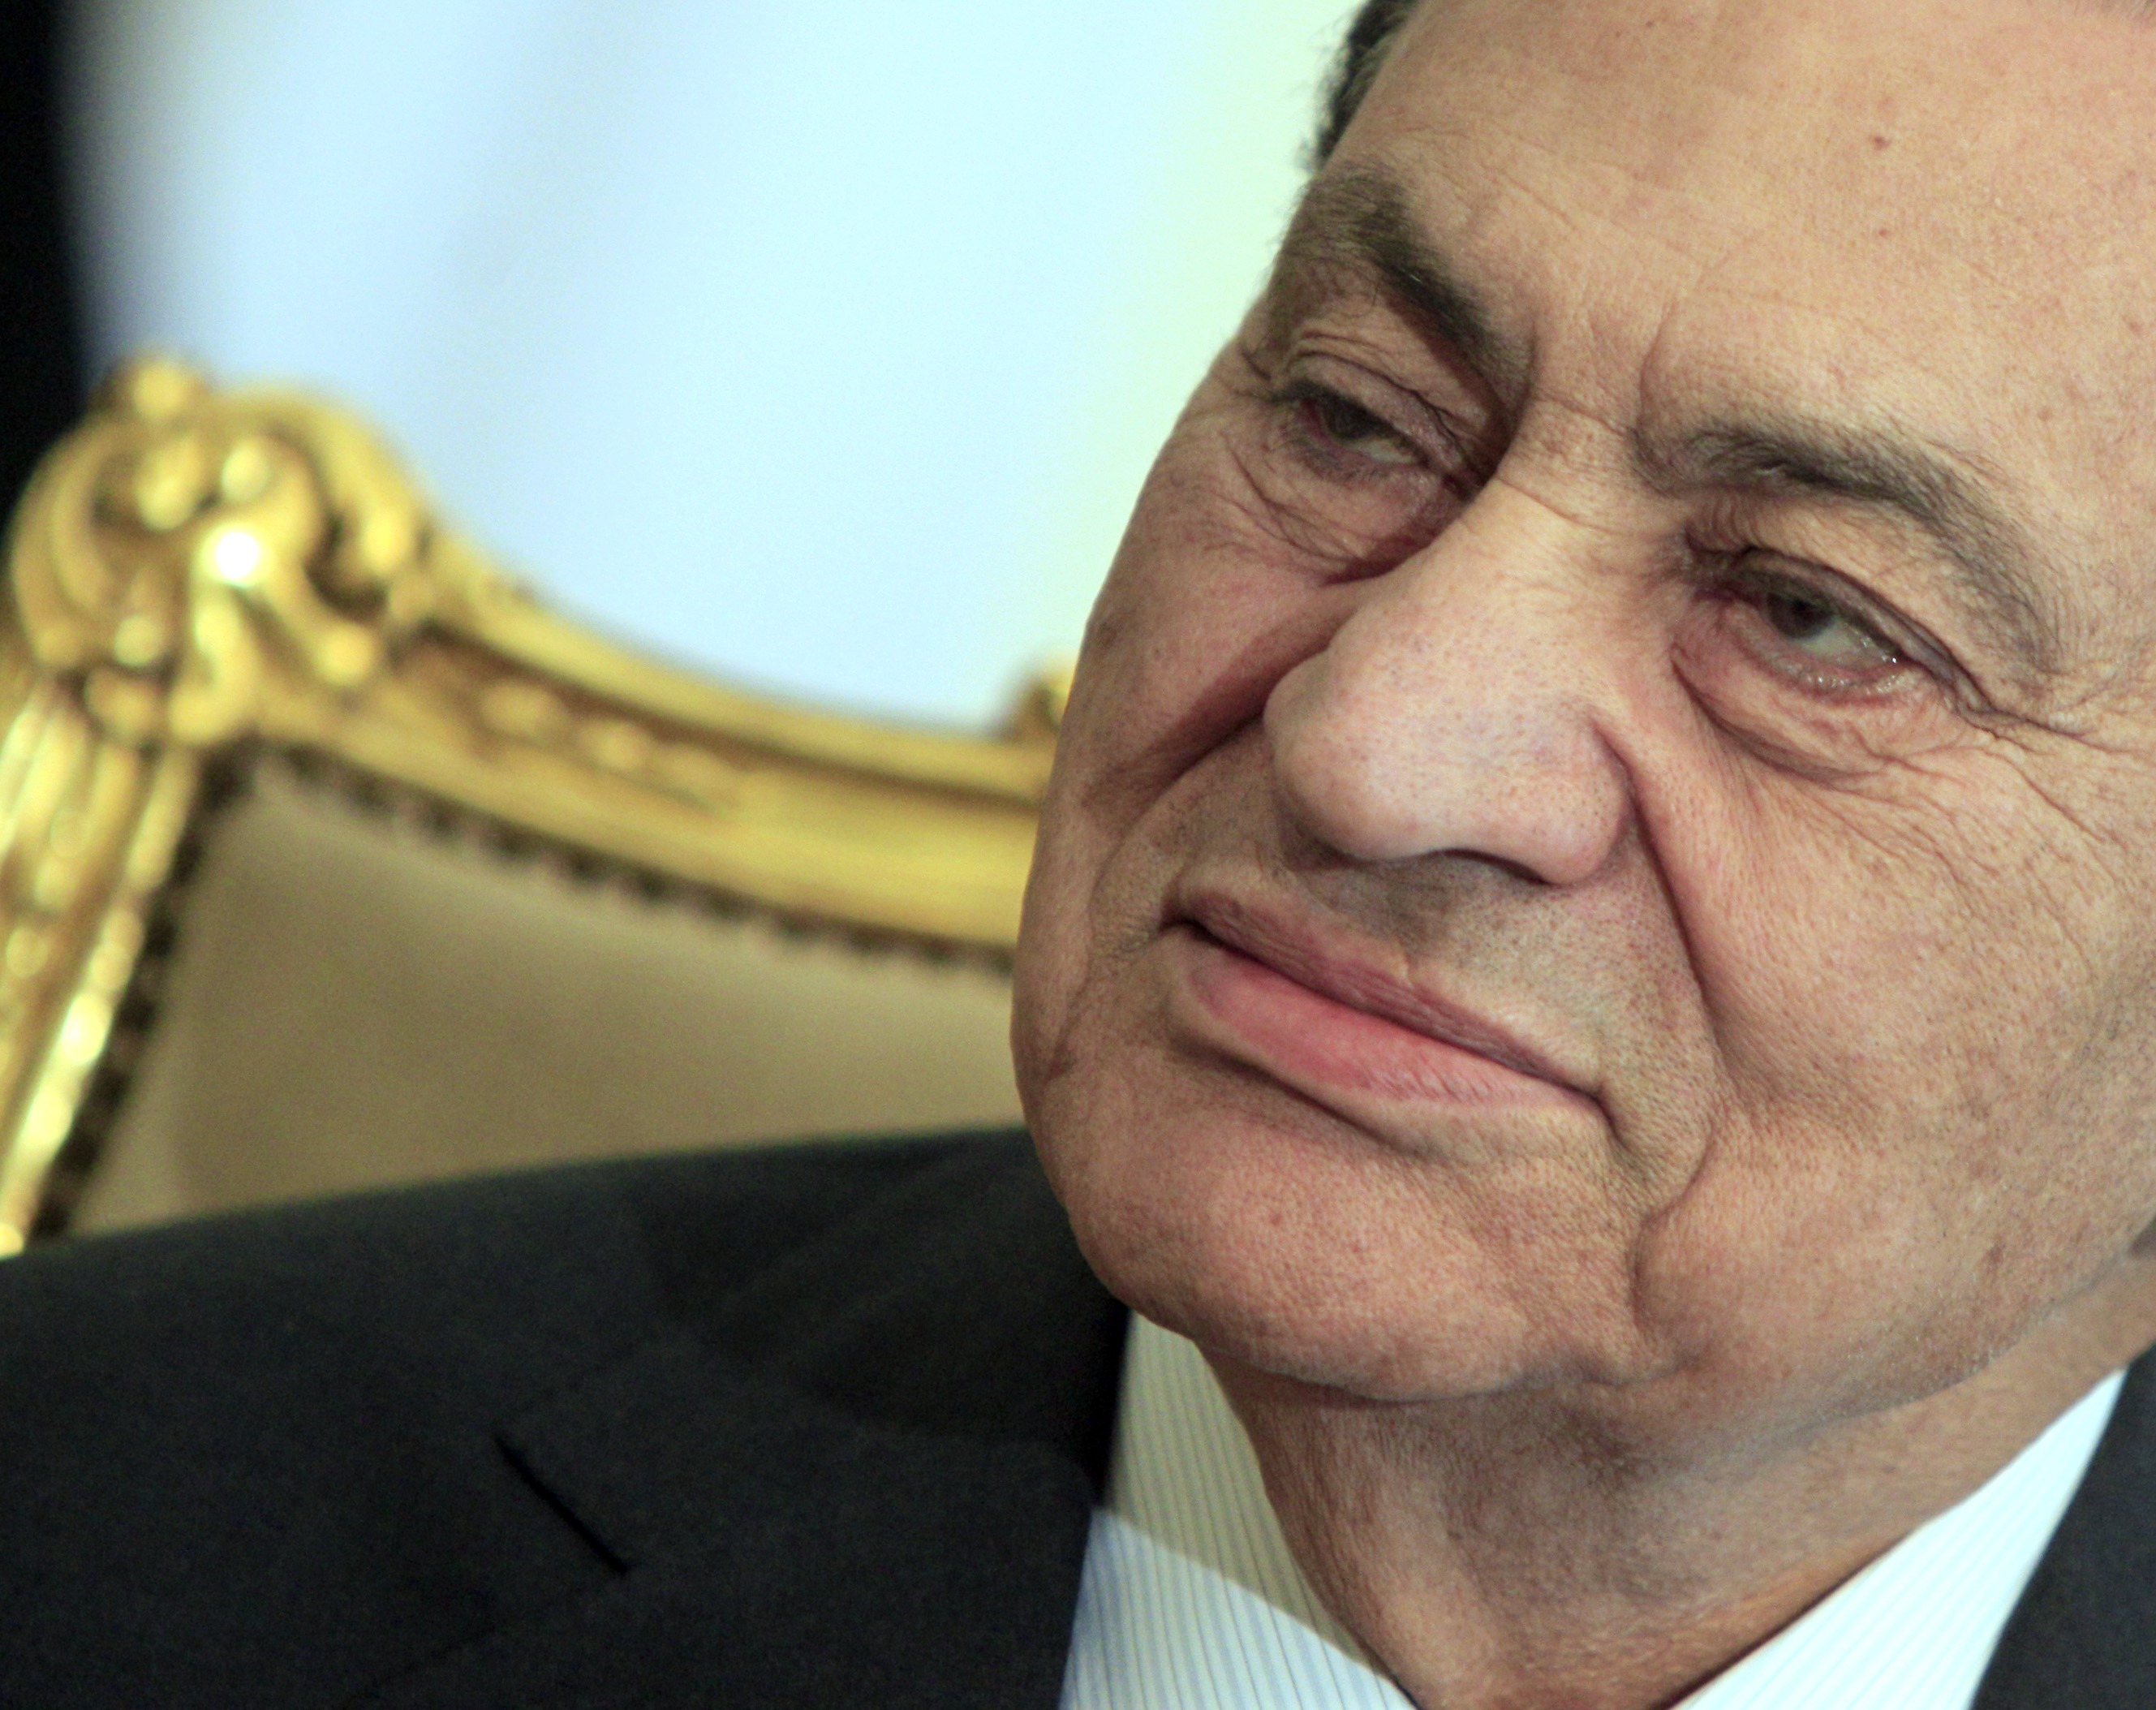 Mubarak, Hosni Mubarak, President, Kairo, Demonstration, Egypten, Politik